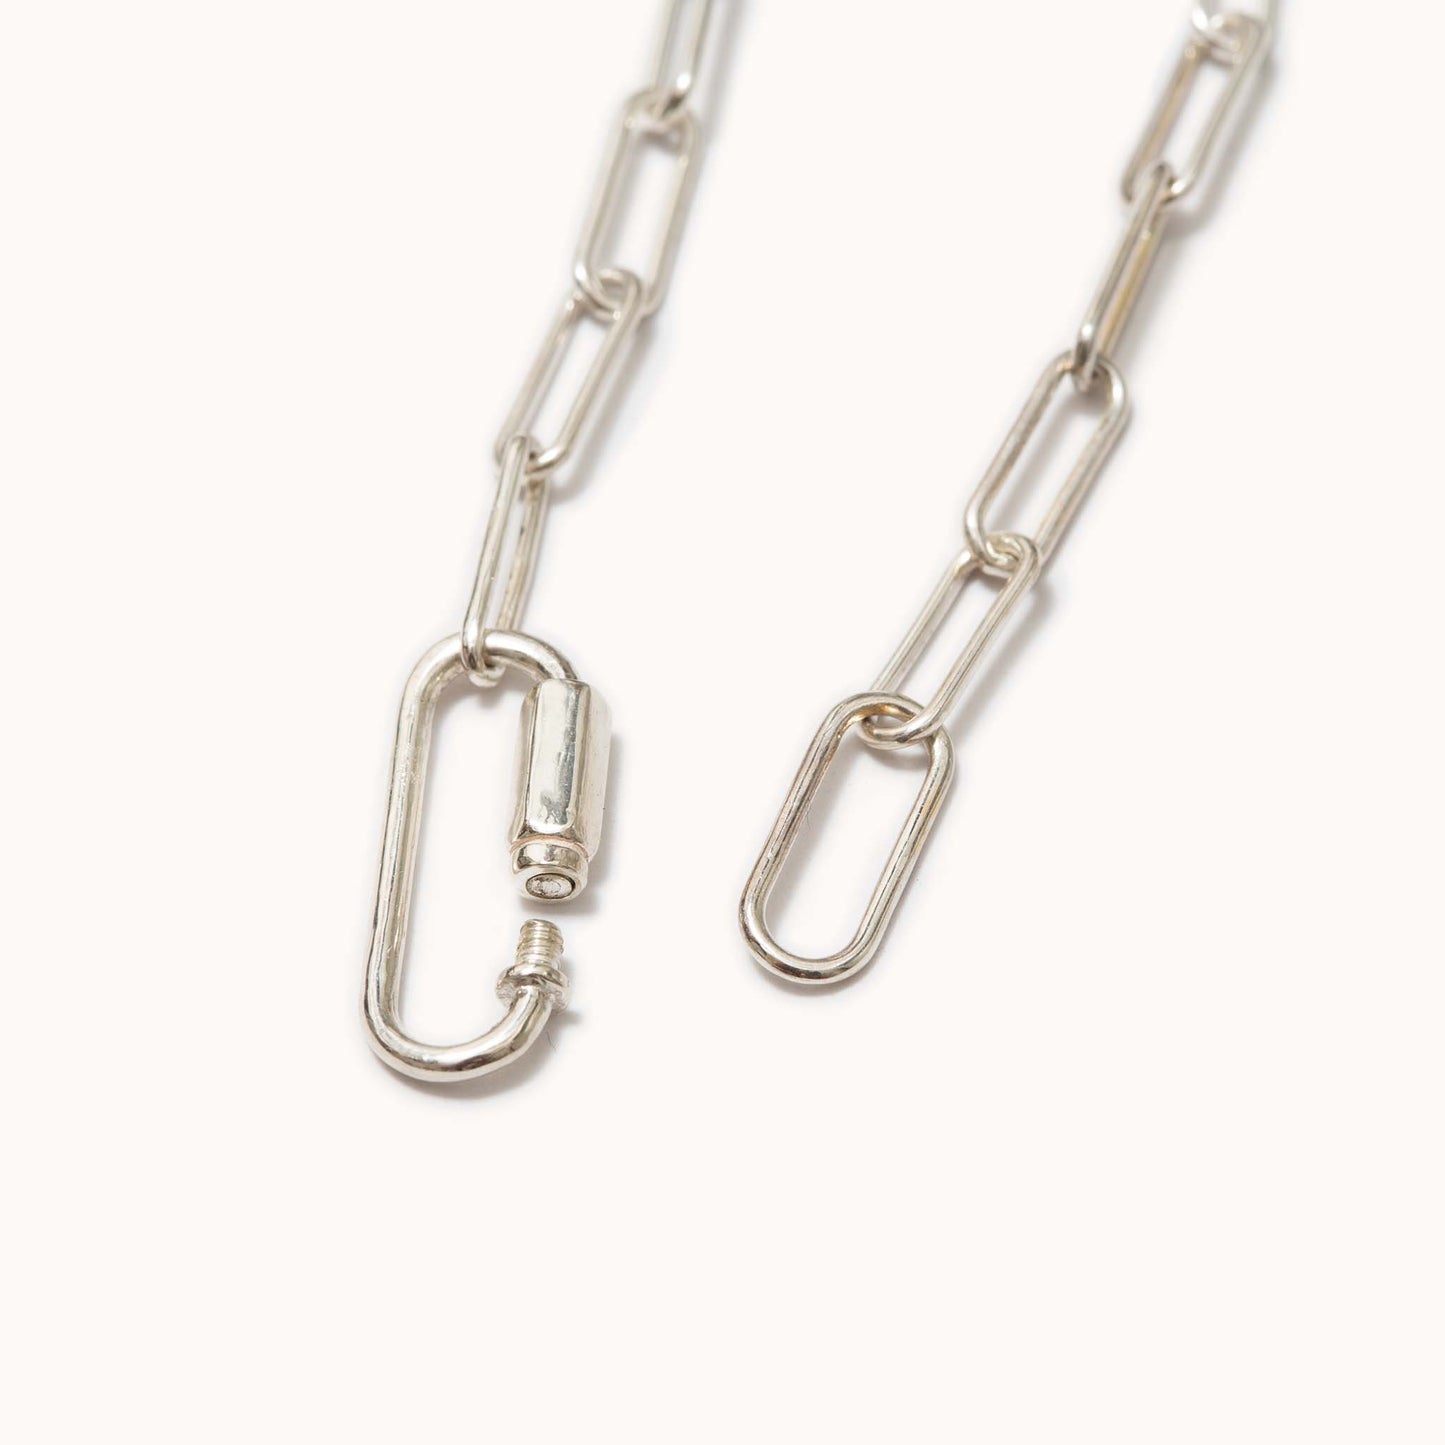 Chain Bracelet with Karabiner カラビナチェーンブレスレット S